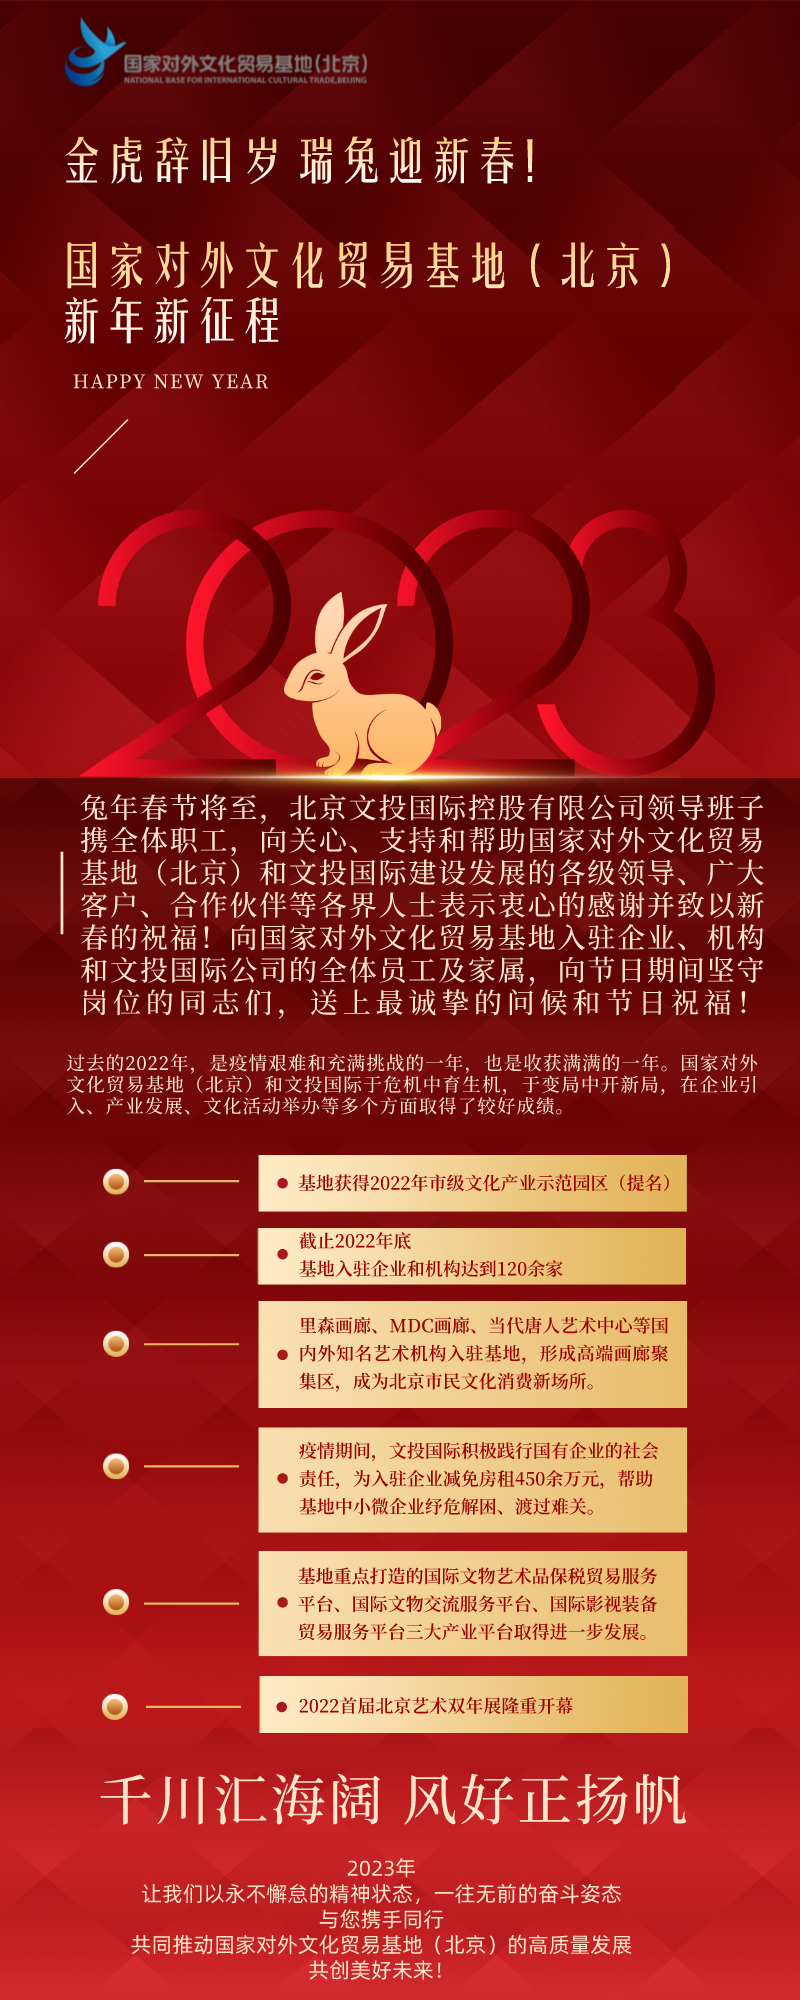 金虎辞旧岁·瑞兔迎新春！国家对外文化贸易基地（北京）新年新征程！